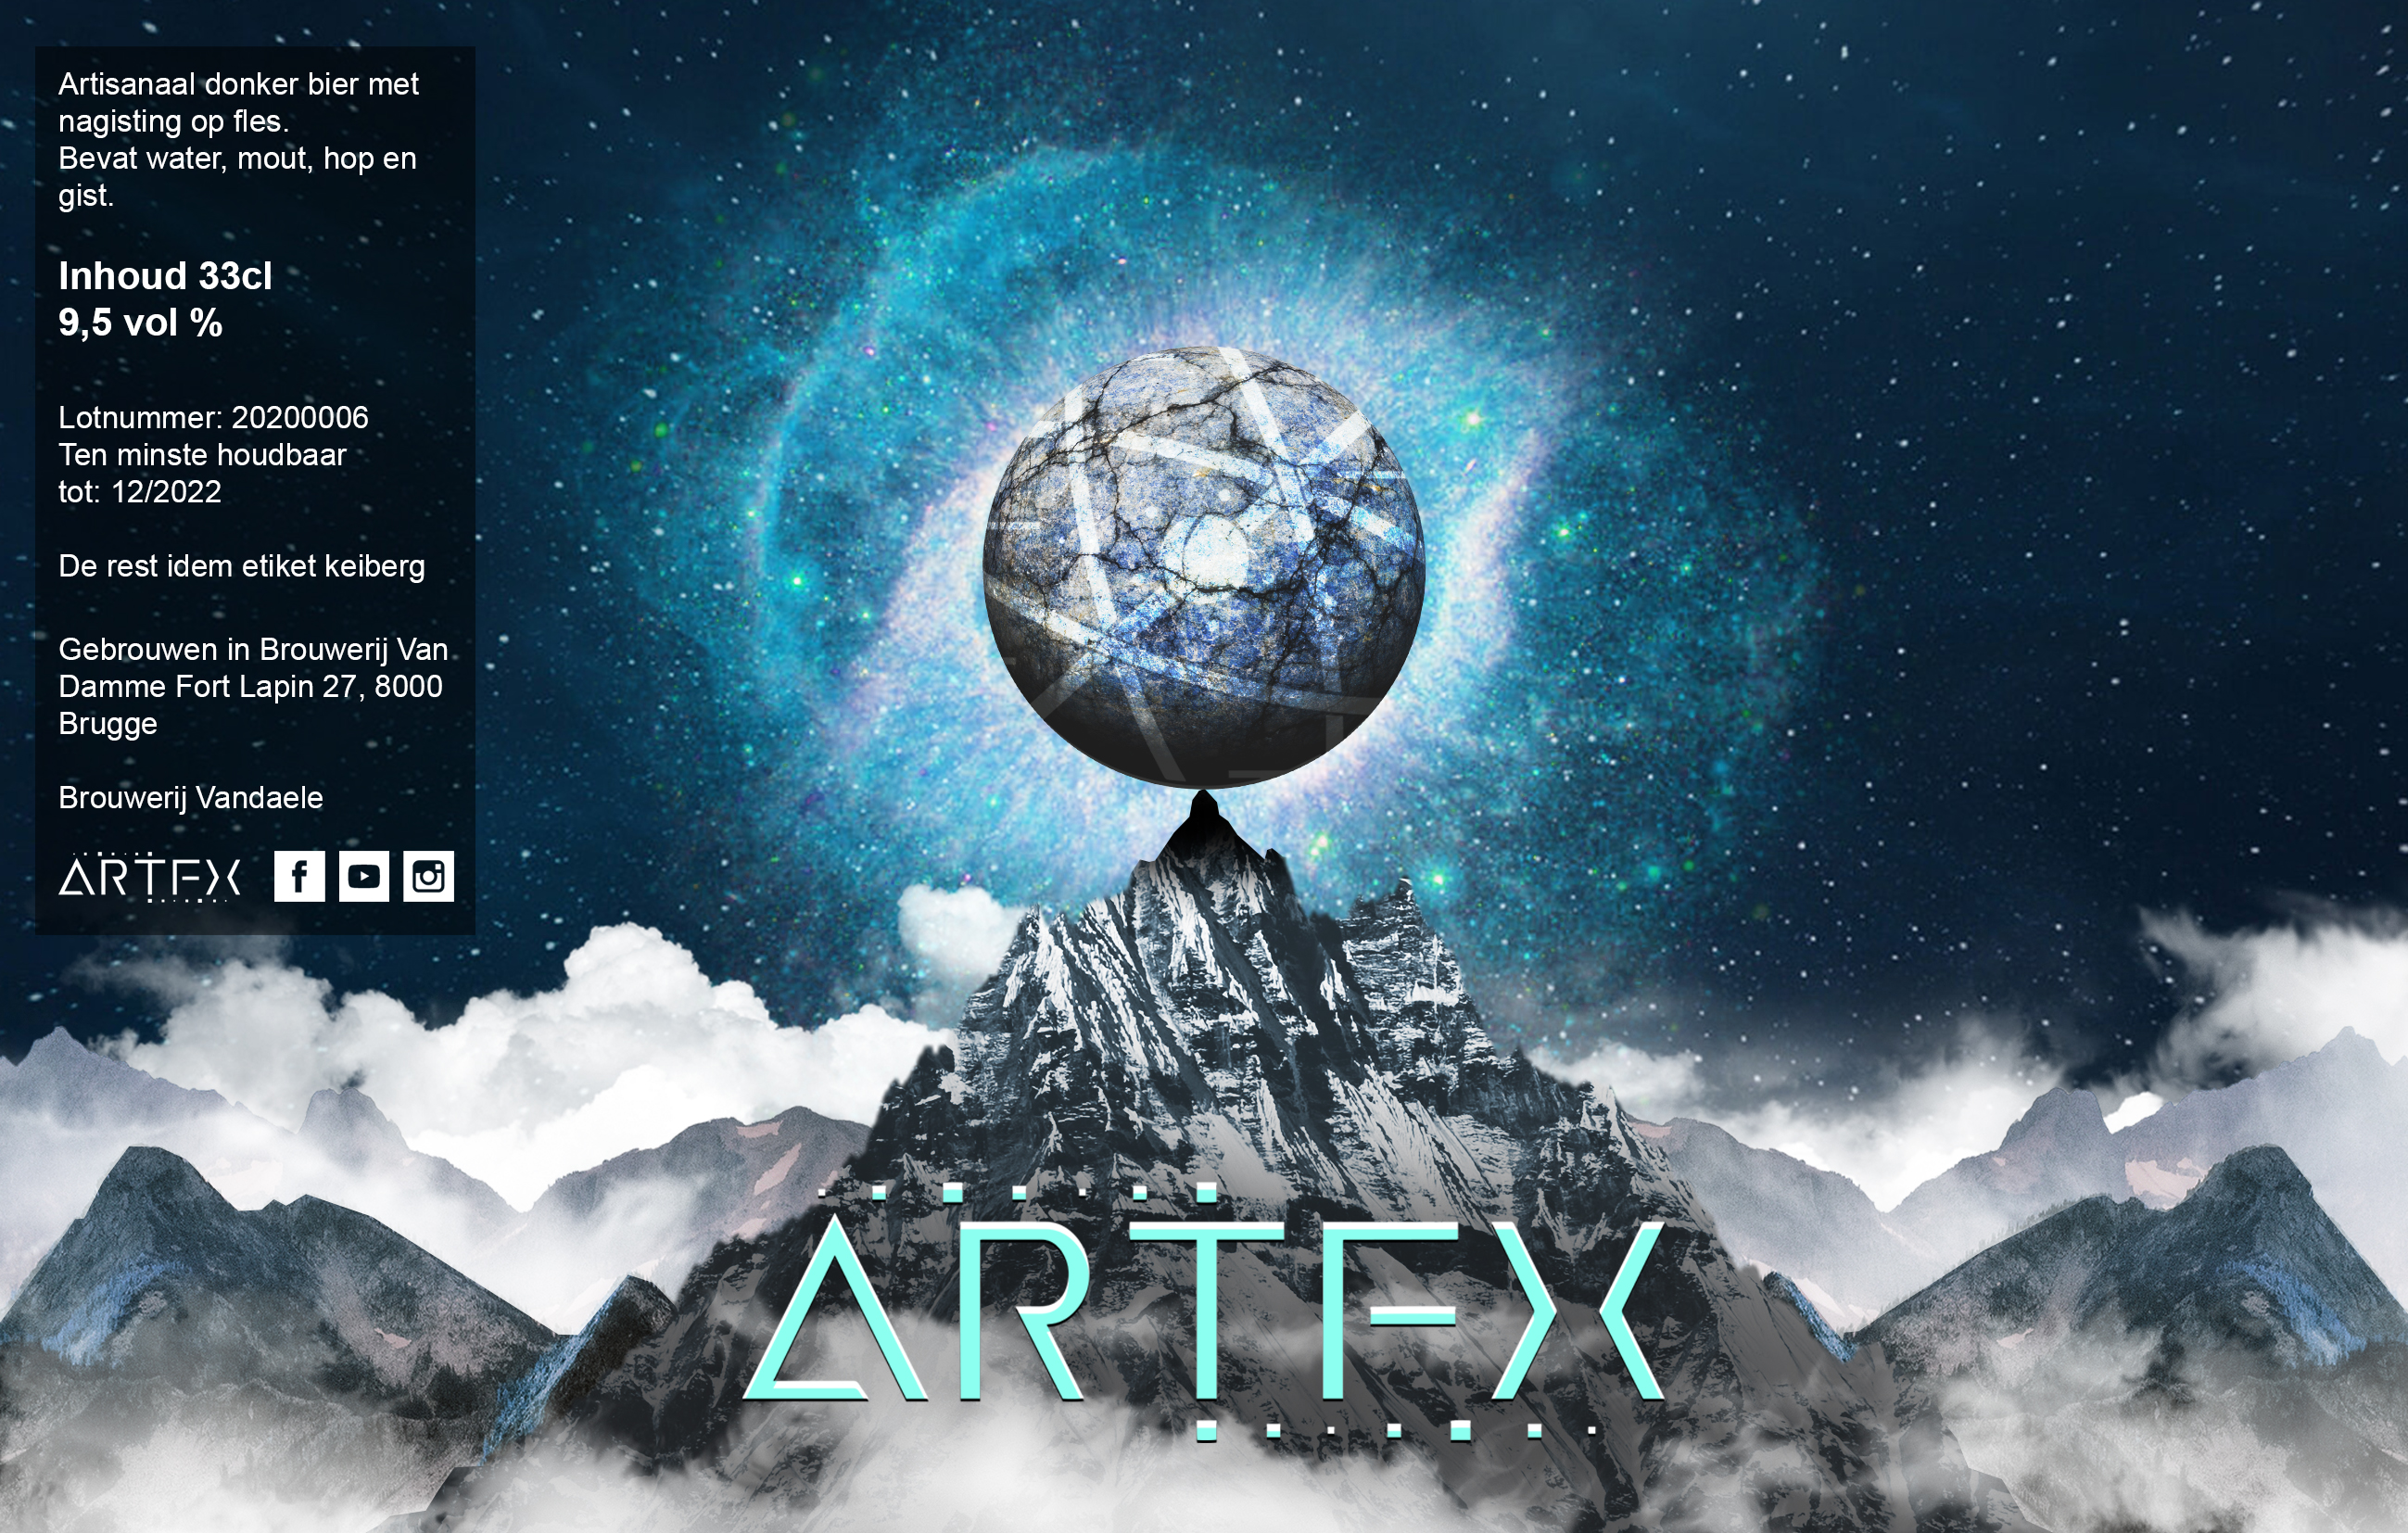 Etiket van metalband ARTFX: spitse rots met bolvormige kei op de top